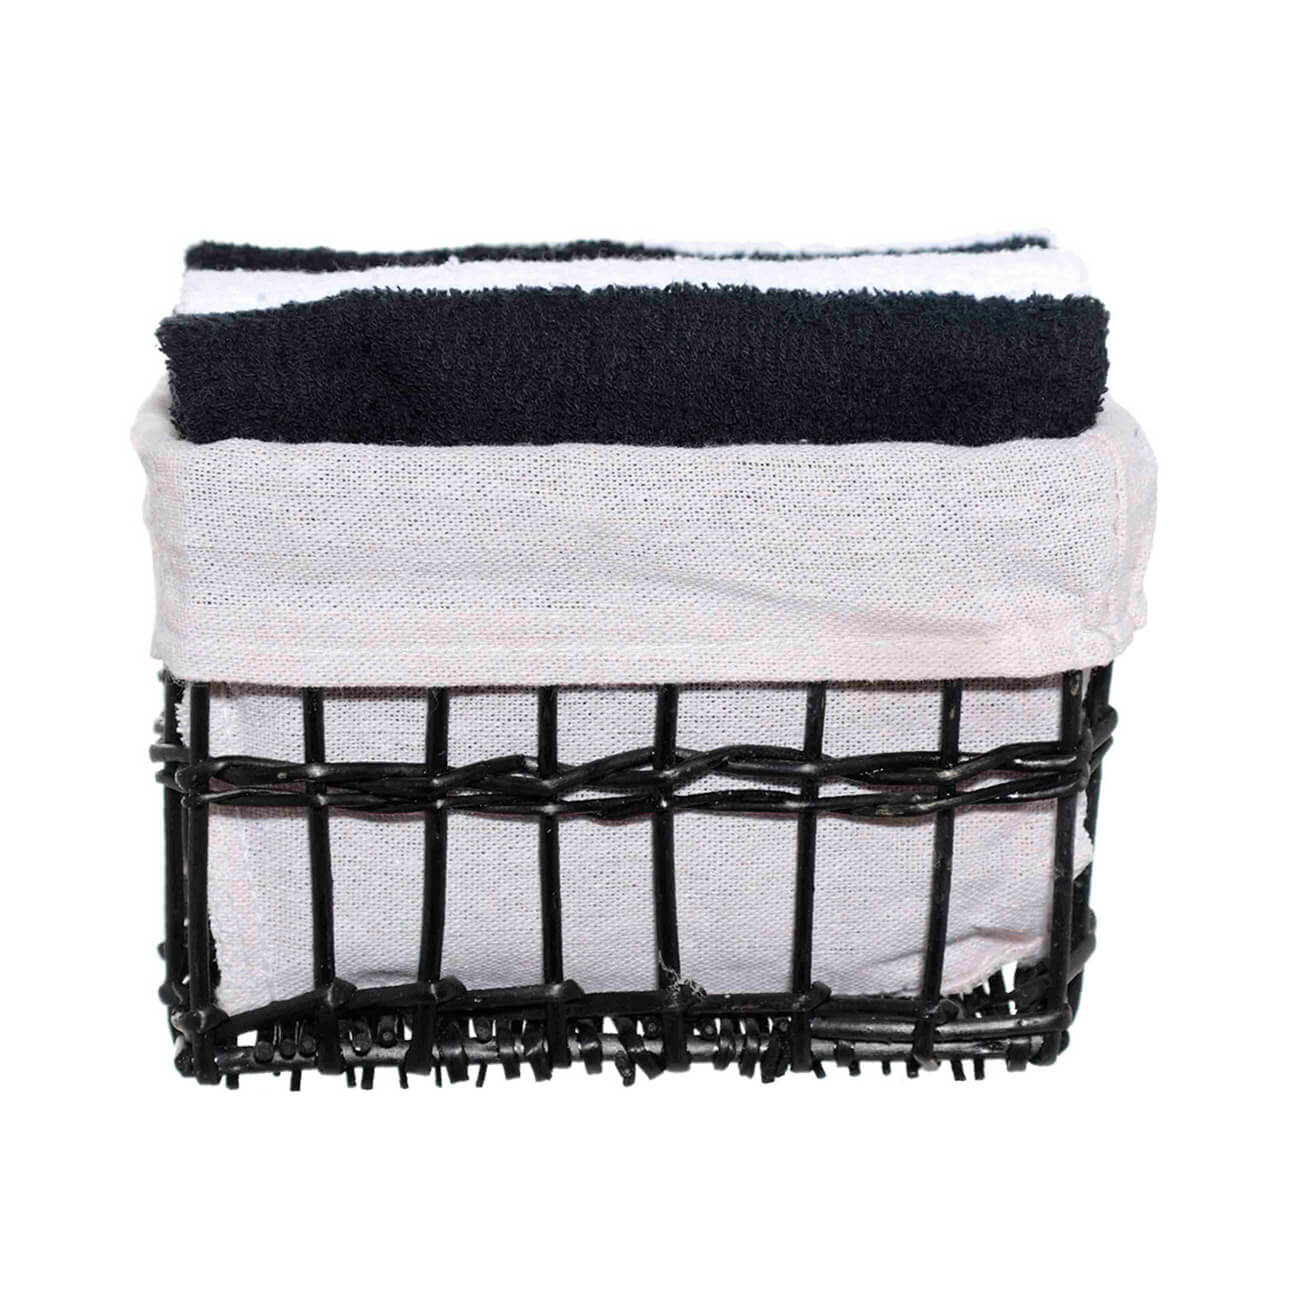 kuchenland полотенце 30х30 см 6 шт в корзине с бантом хлопок бежевое белое basket towel Полотенце, 30х30 см, 4 шт, в корзине, хлопок/лоза, черное/белое, Basket towel